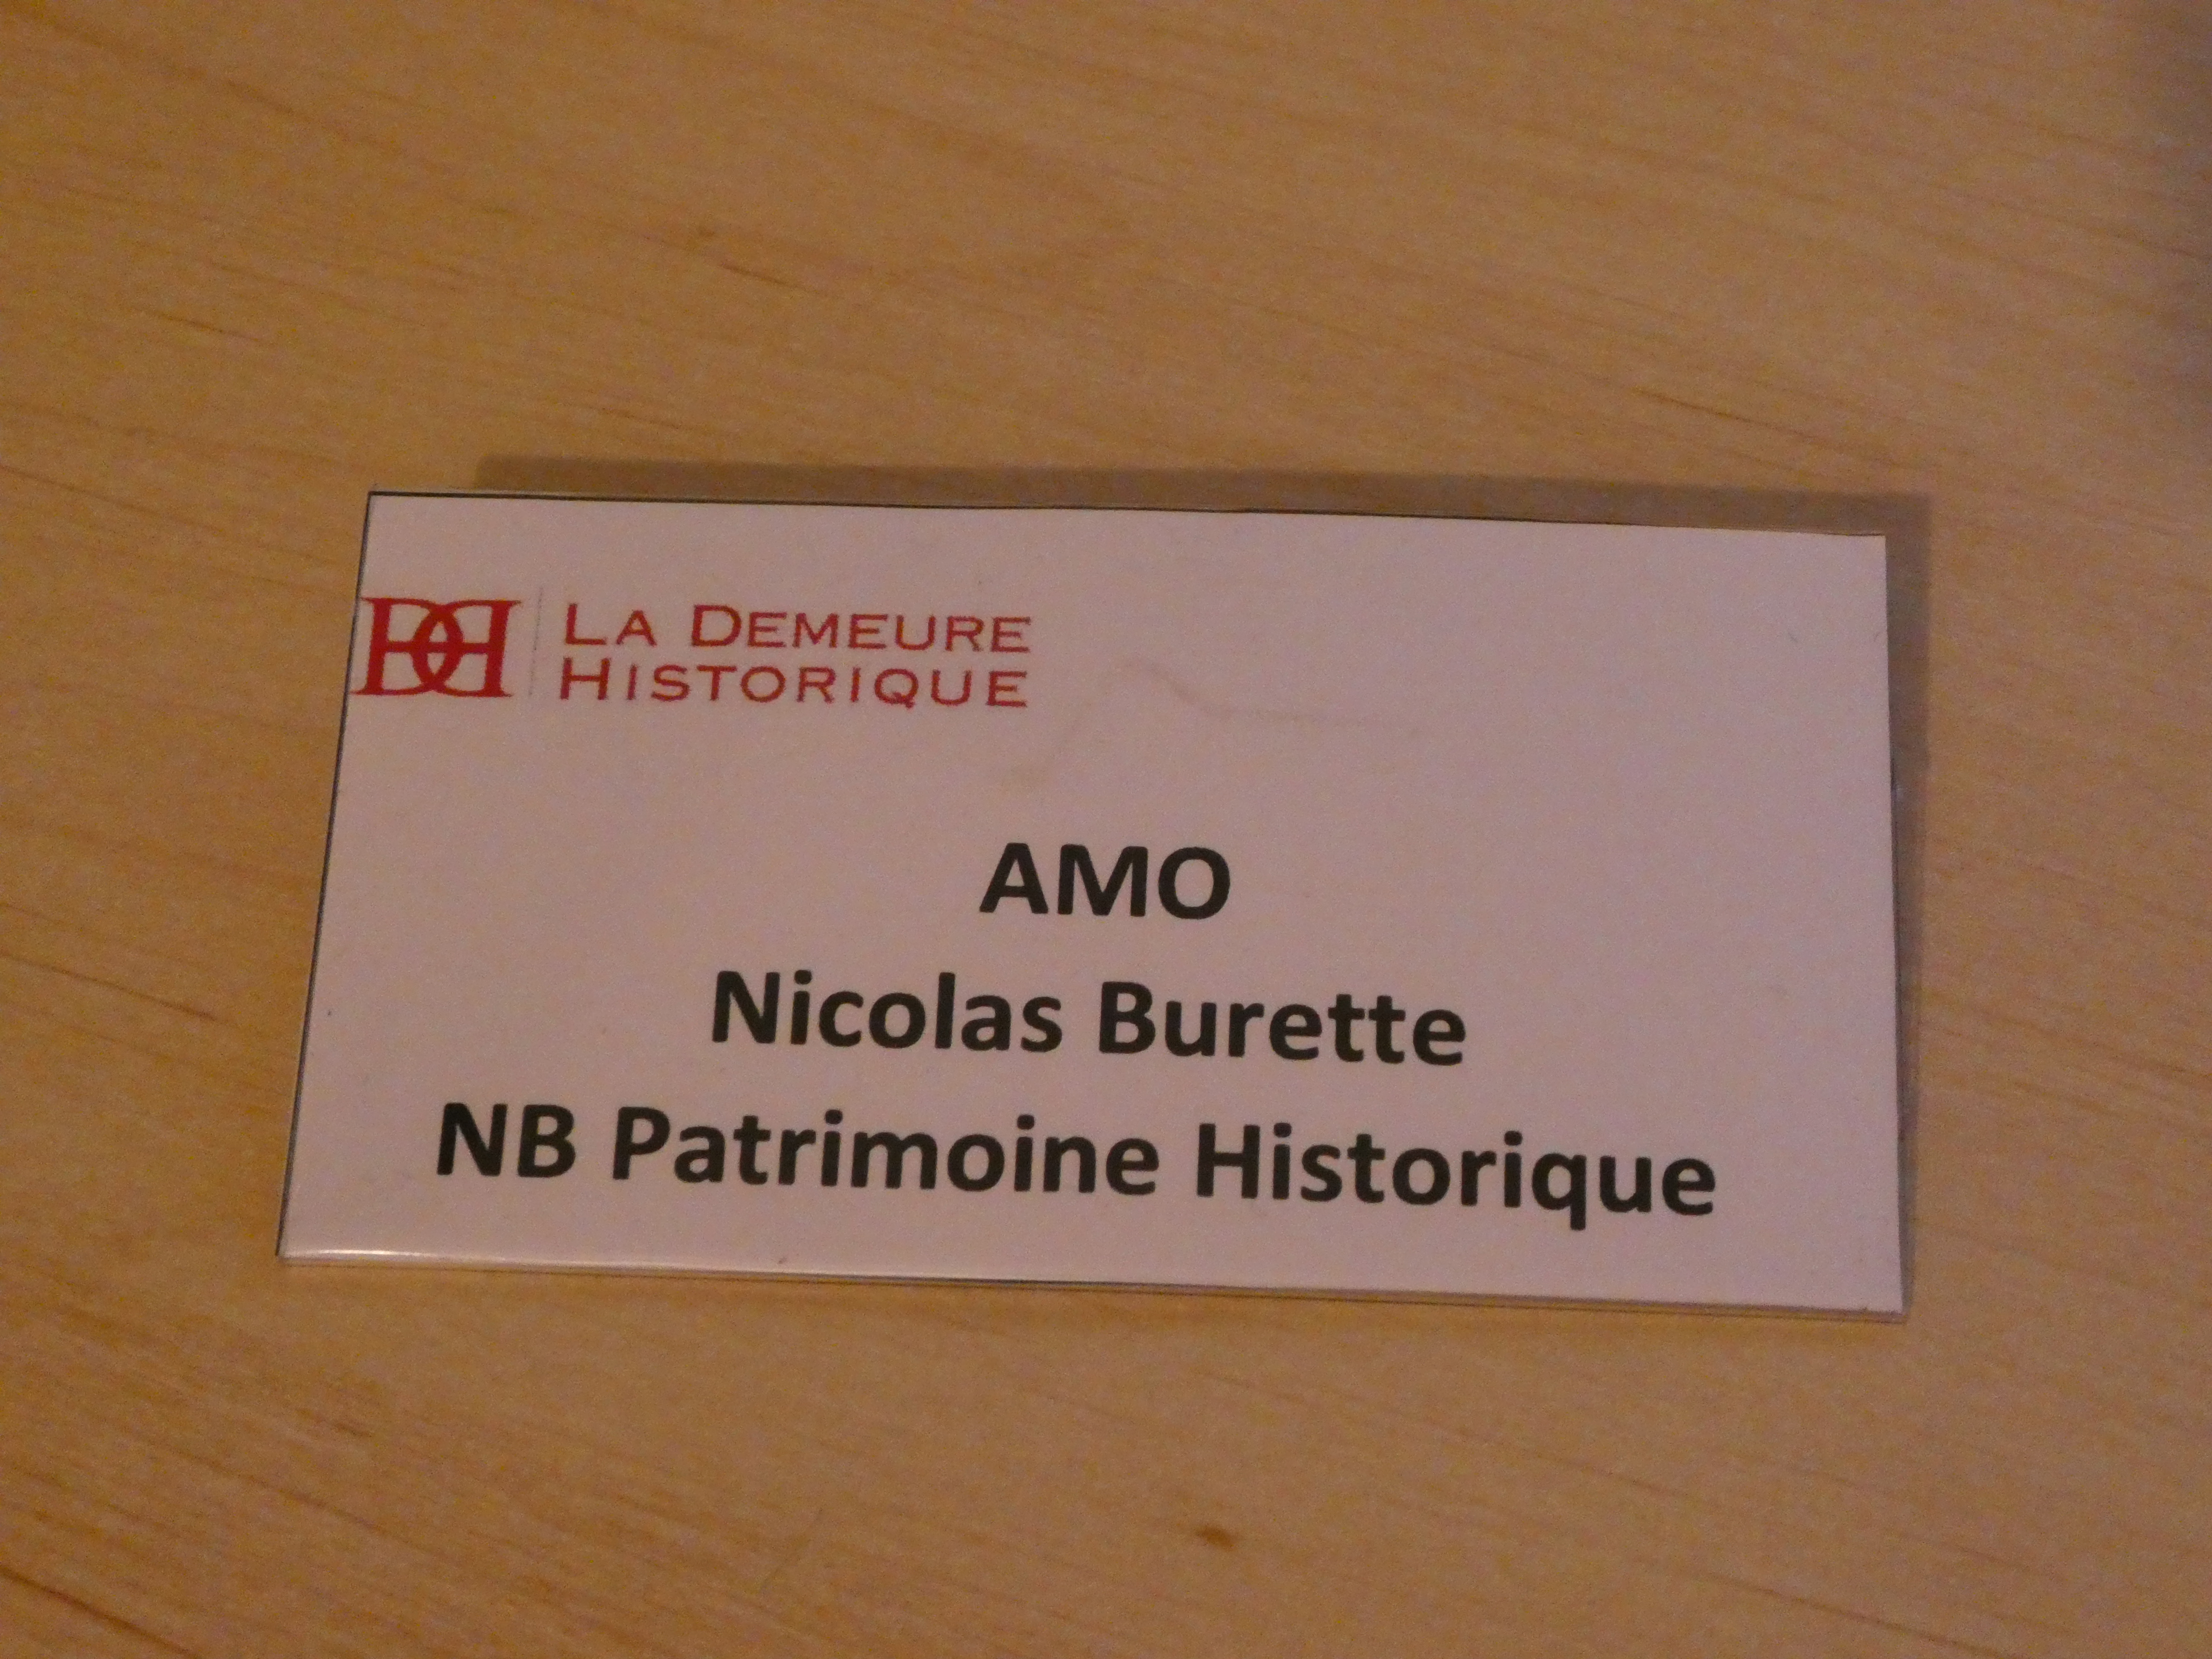 NB Patrimoine Historique assistant à maîtrise d'ouvrage (AMO) référencé par la Demeure Historique